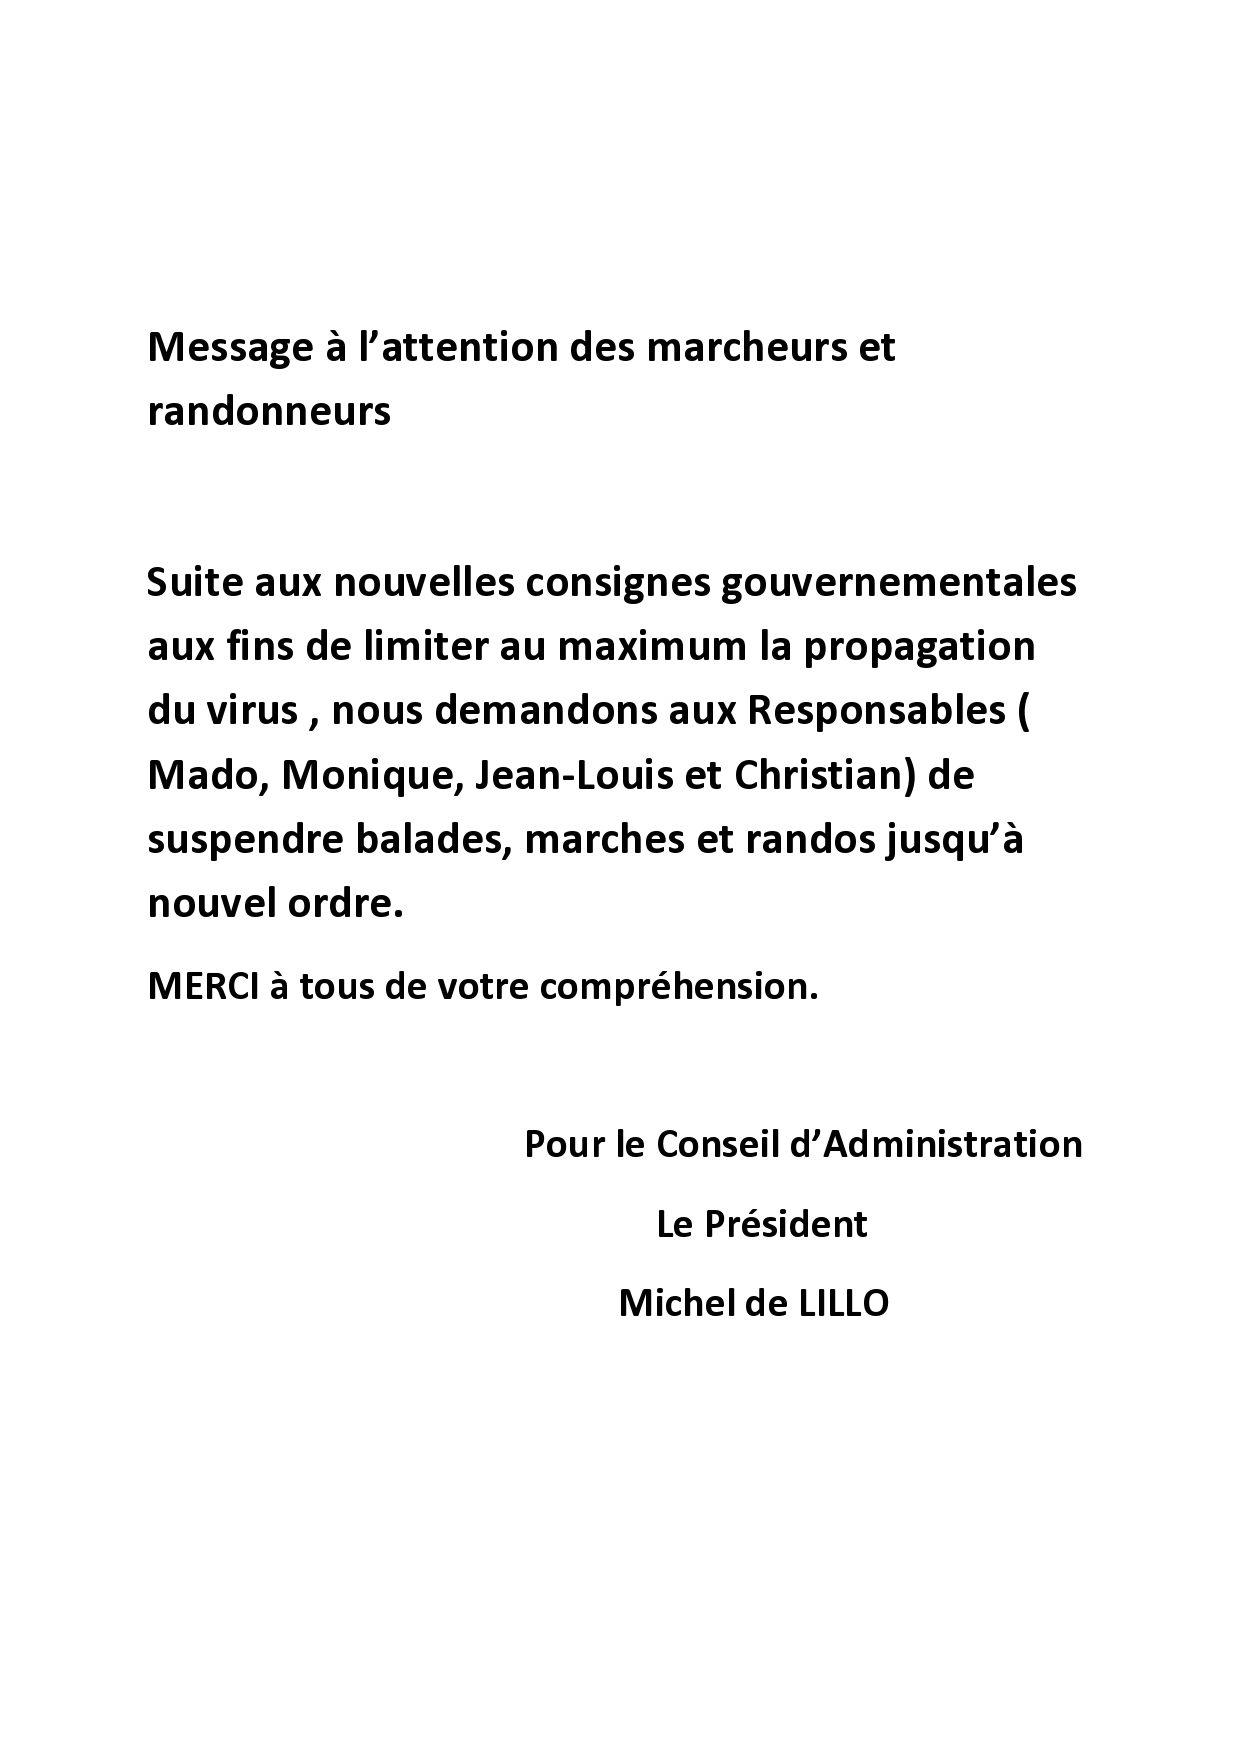 Message aux marcheurs-page0001.jpg